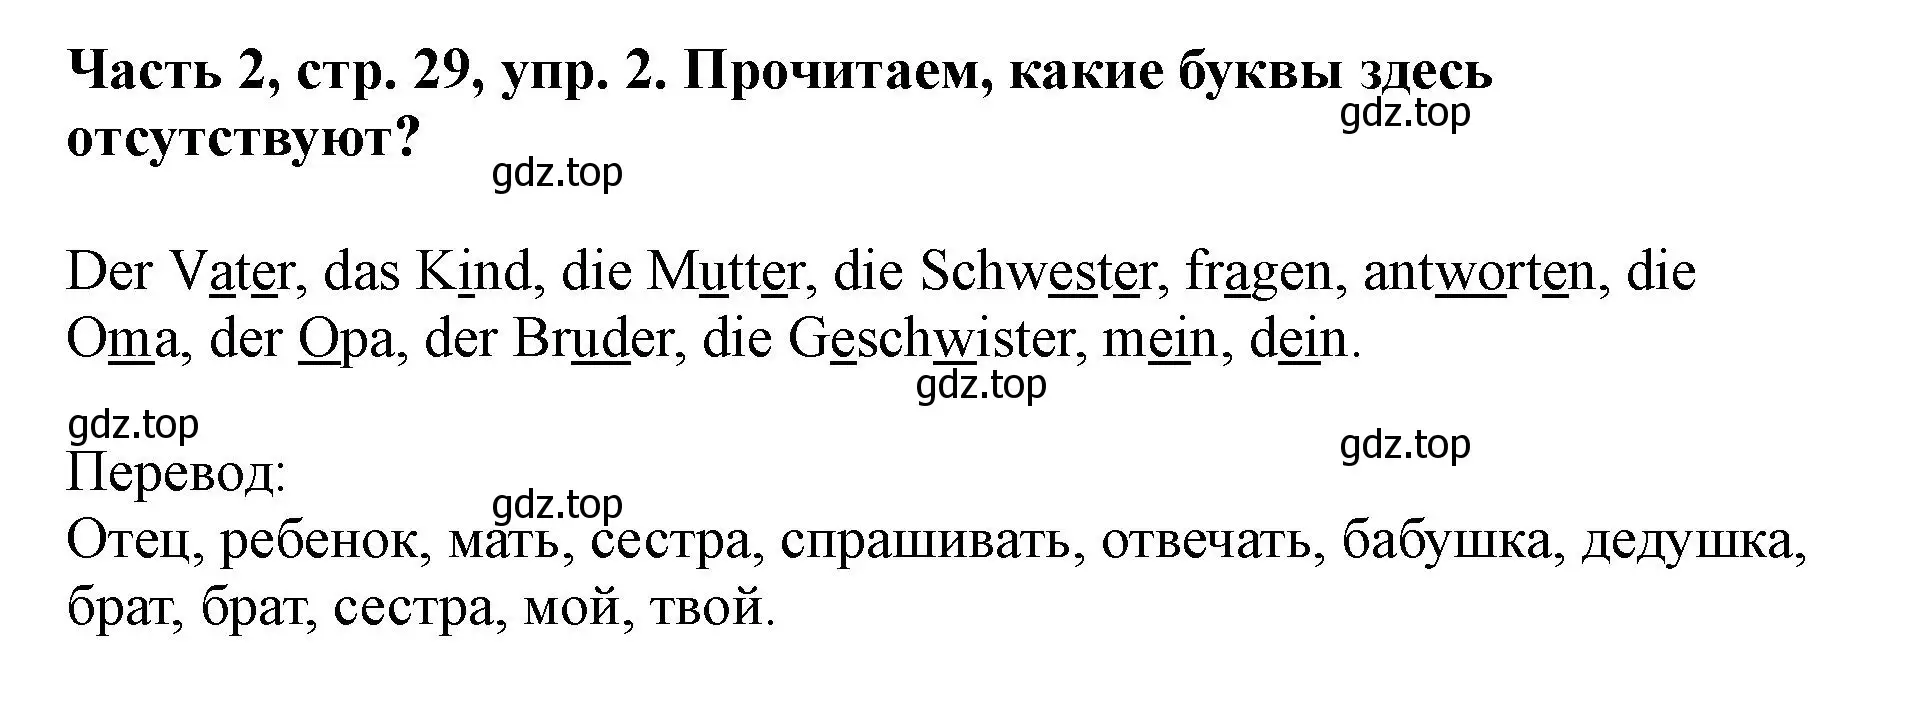 Решение номер 2 (страница 29) гдз по немецкому языку 2 класс Бим, Рыжова, учебник 2 часть